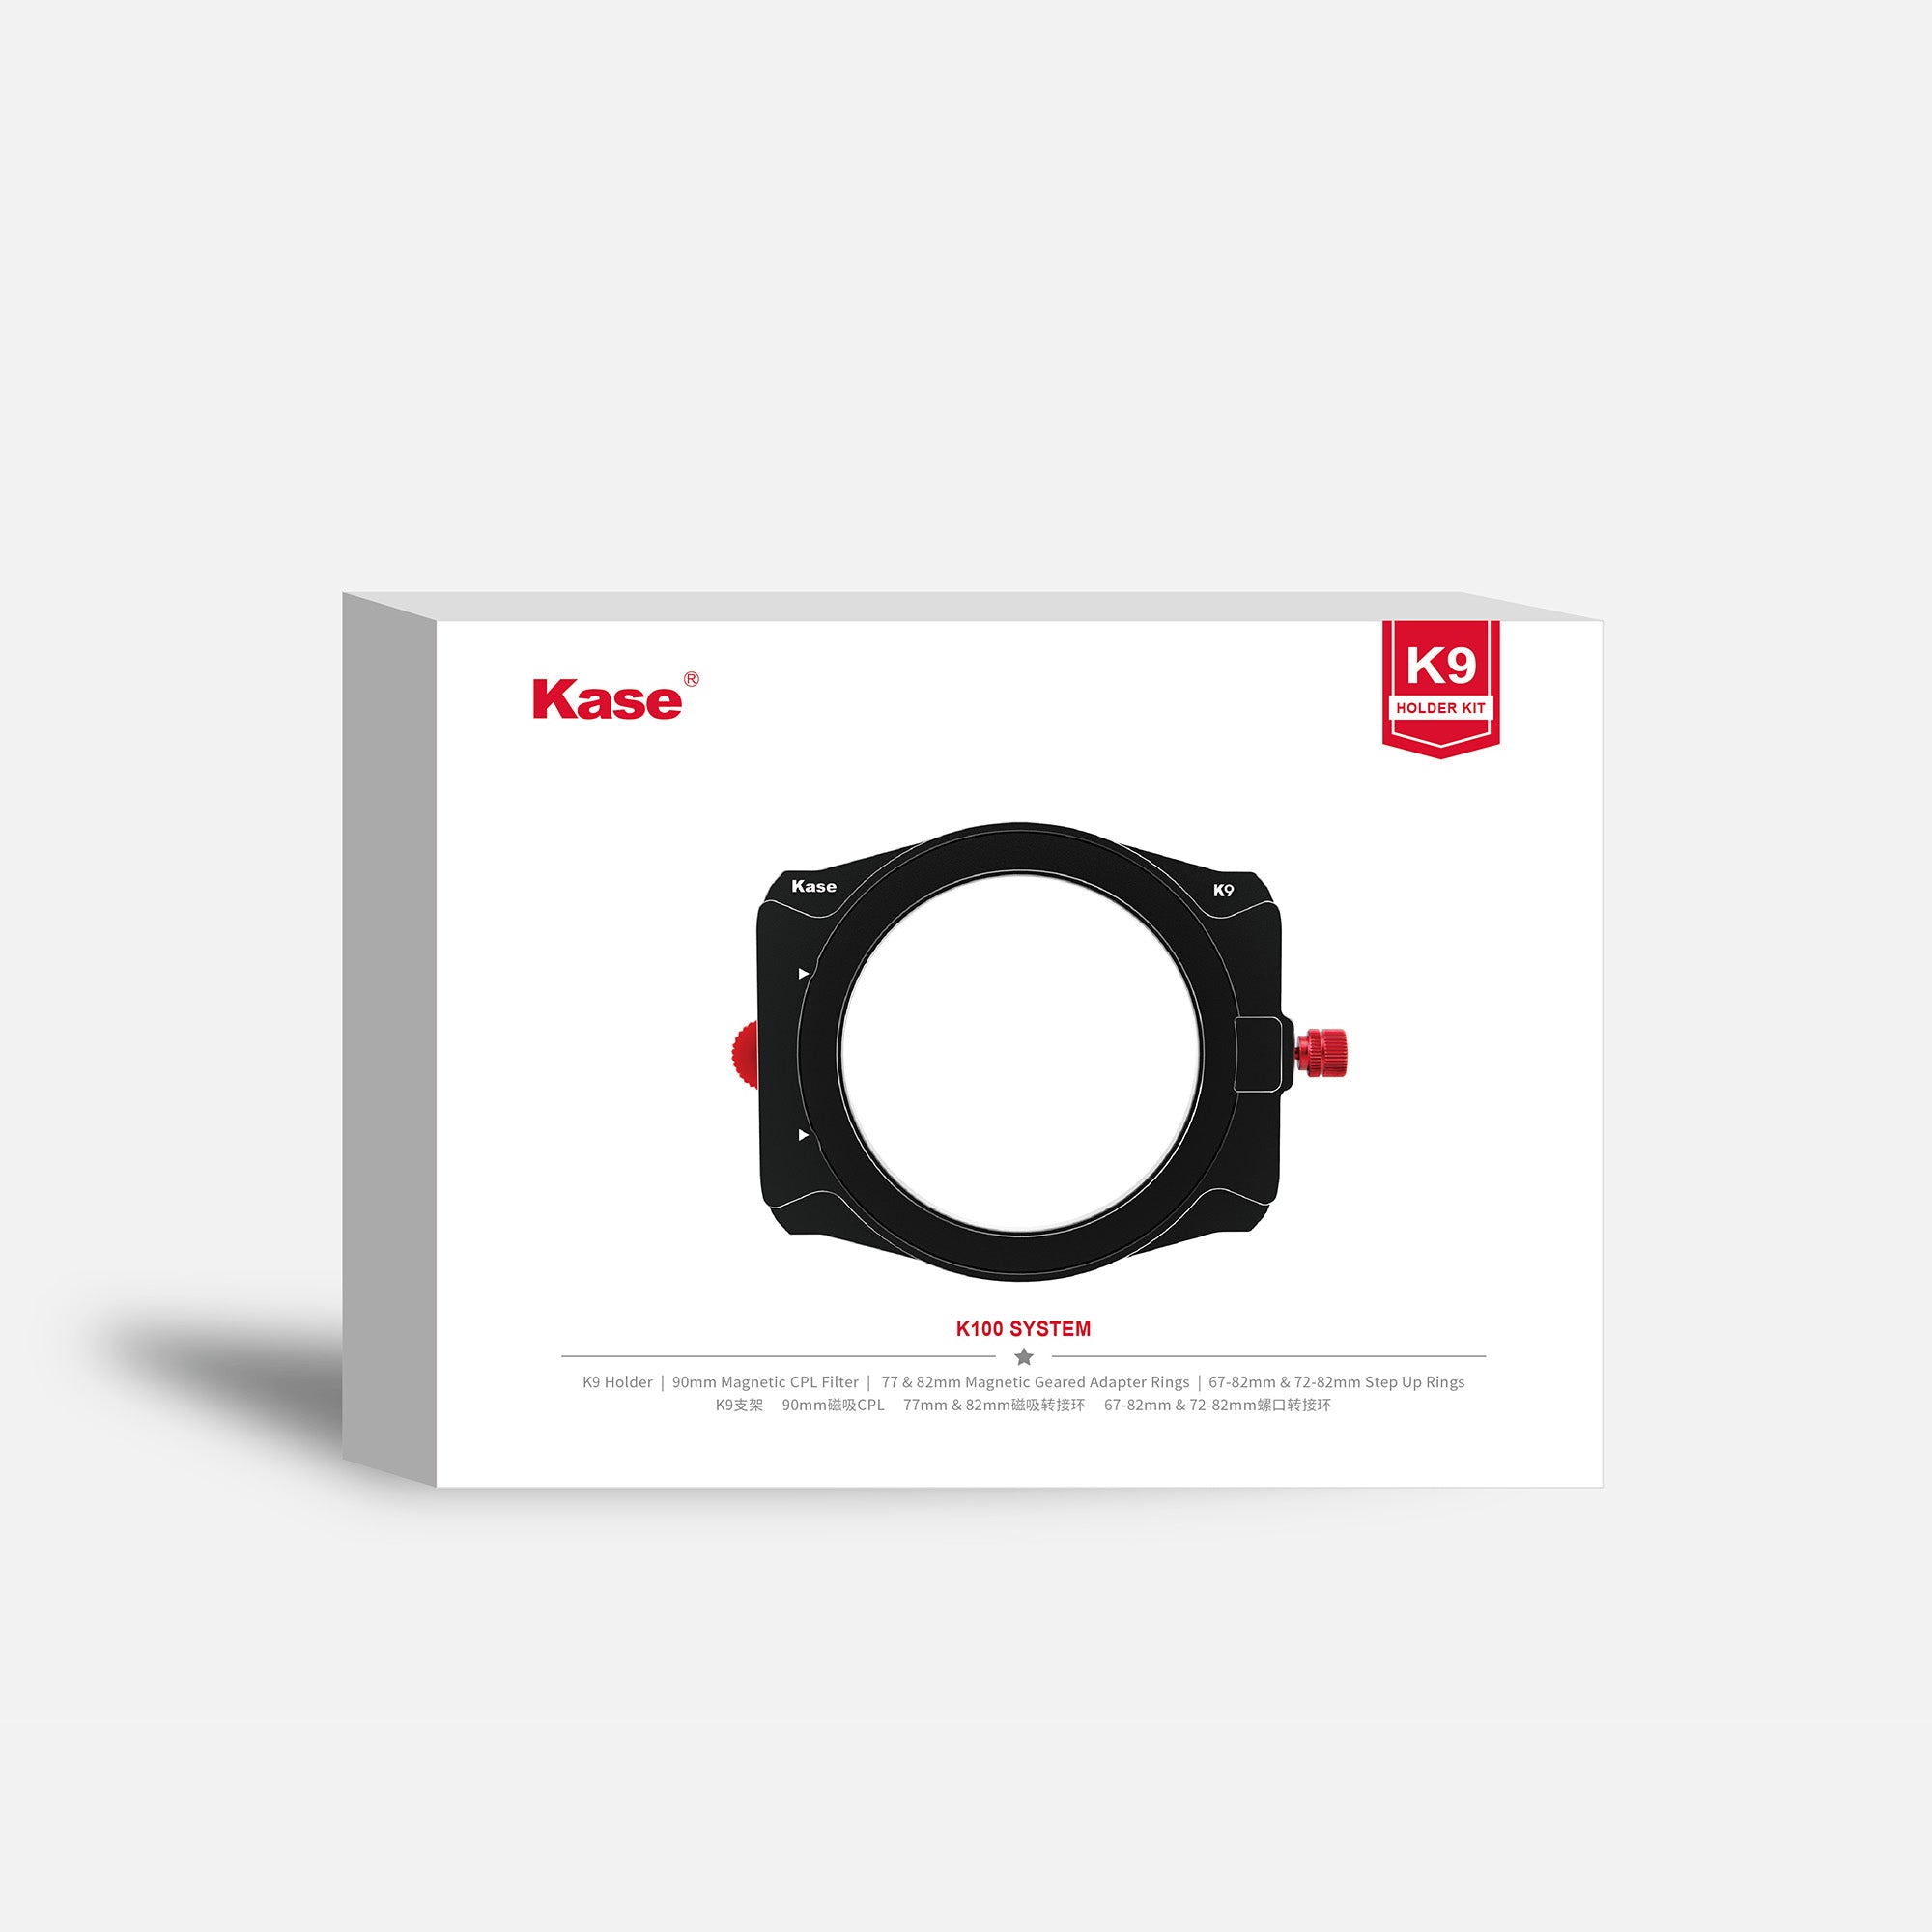 Kase K9 100mm Filter Holder Kit